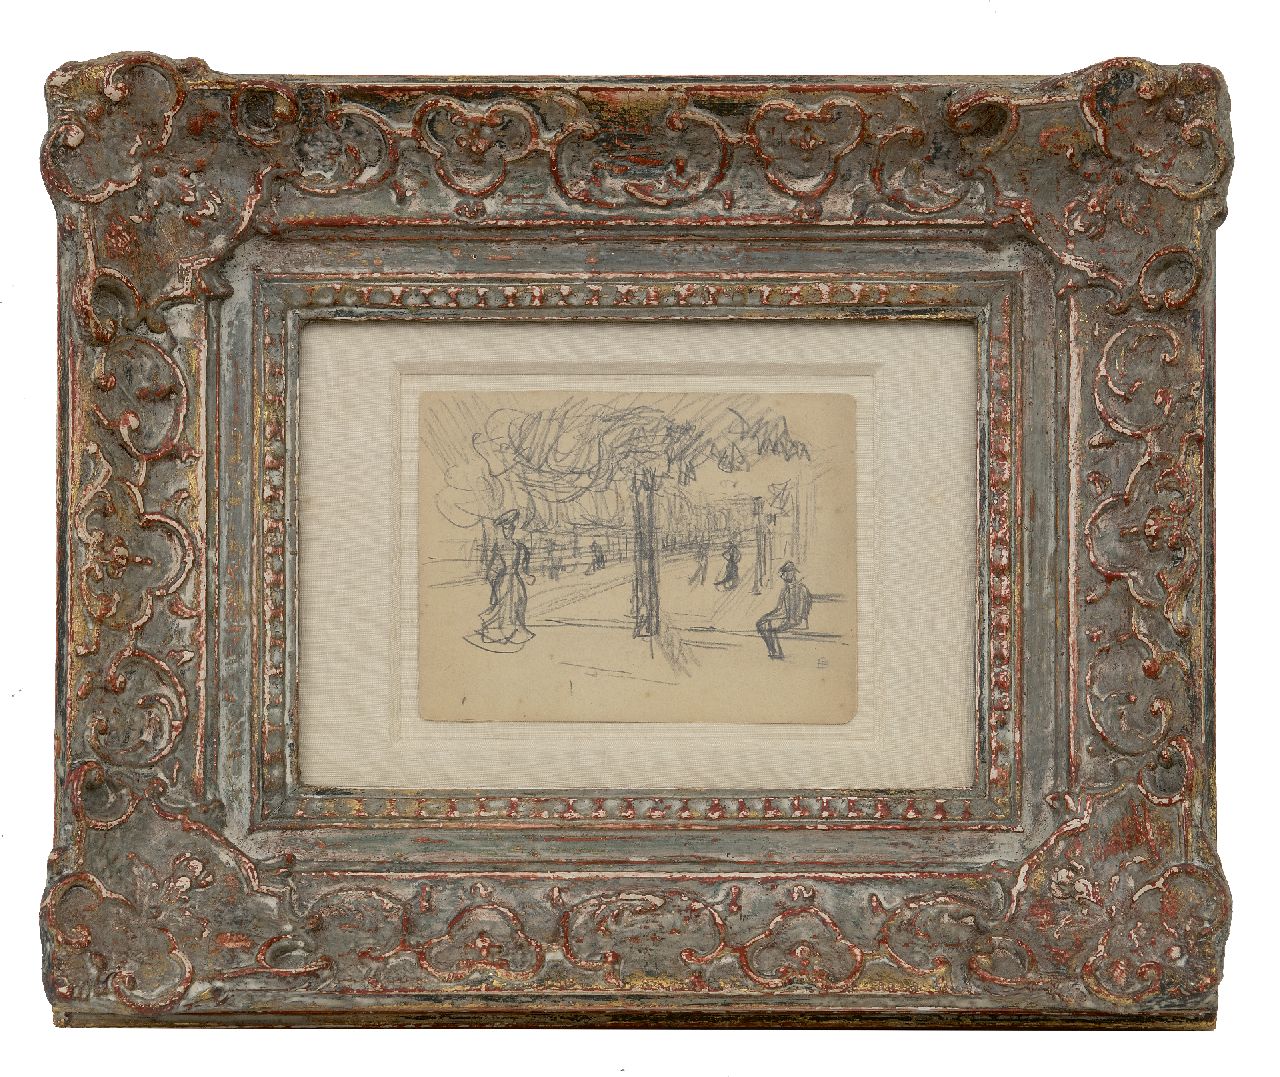 Bonnard P.E.F.  | 'Pierre' Eugène Frédéric Bonnard | Aquarellen en tekeningen te koop aangeboden | Boulevard animé, zwart krijt op papier 10,9 x 14,0 cm, gesigneerd rechtsonder met monogram